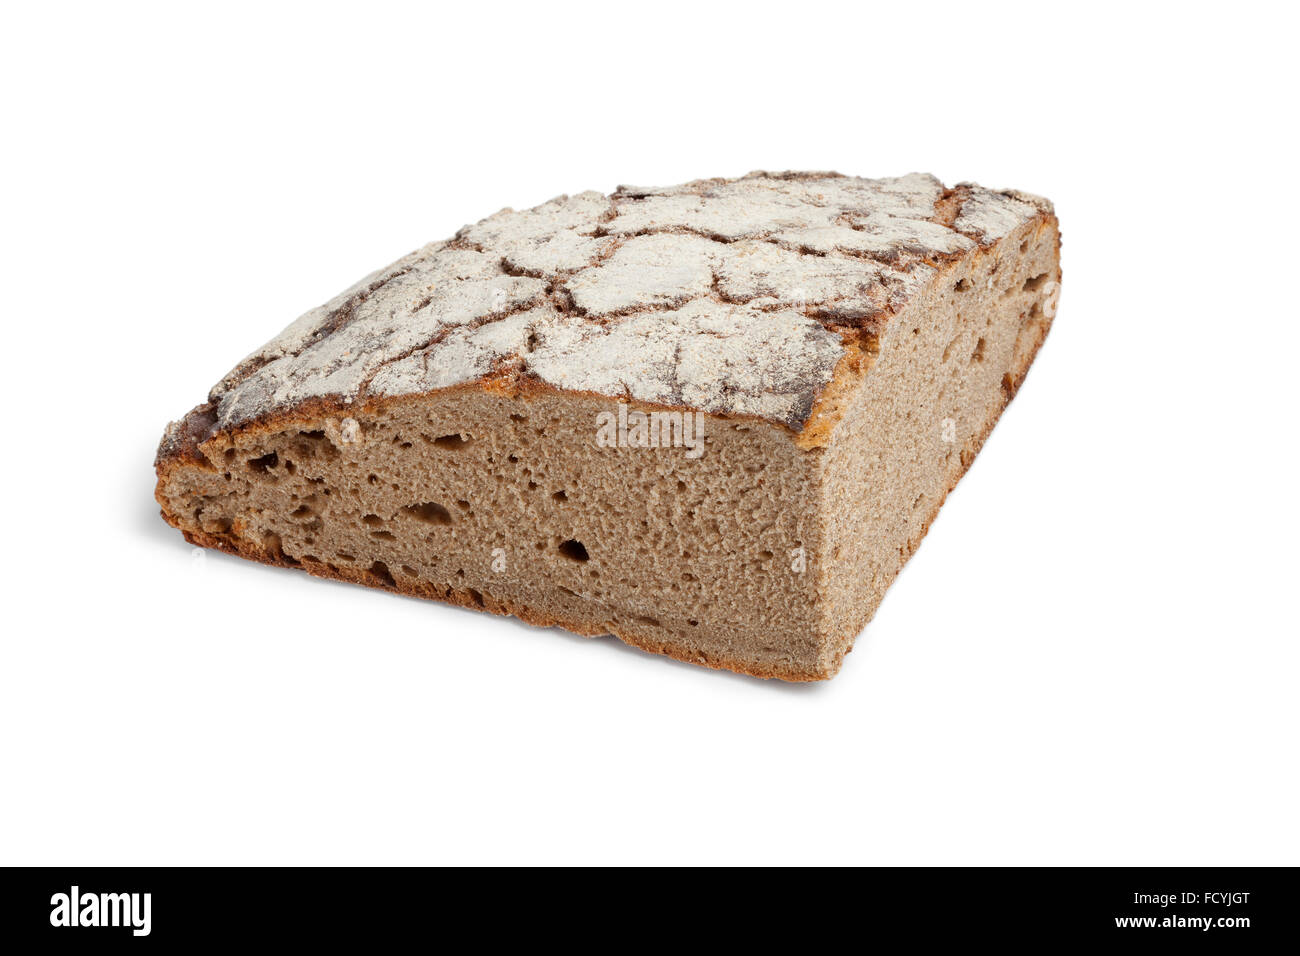 Morceau de pain au levain allemand sain sur fond blanc Banque D'Images